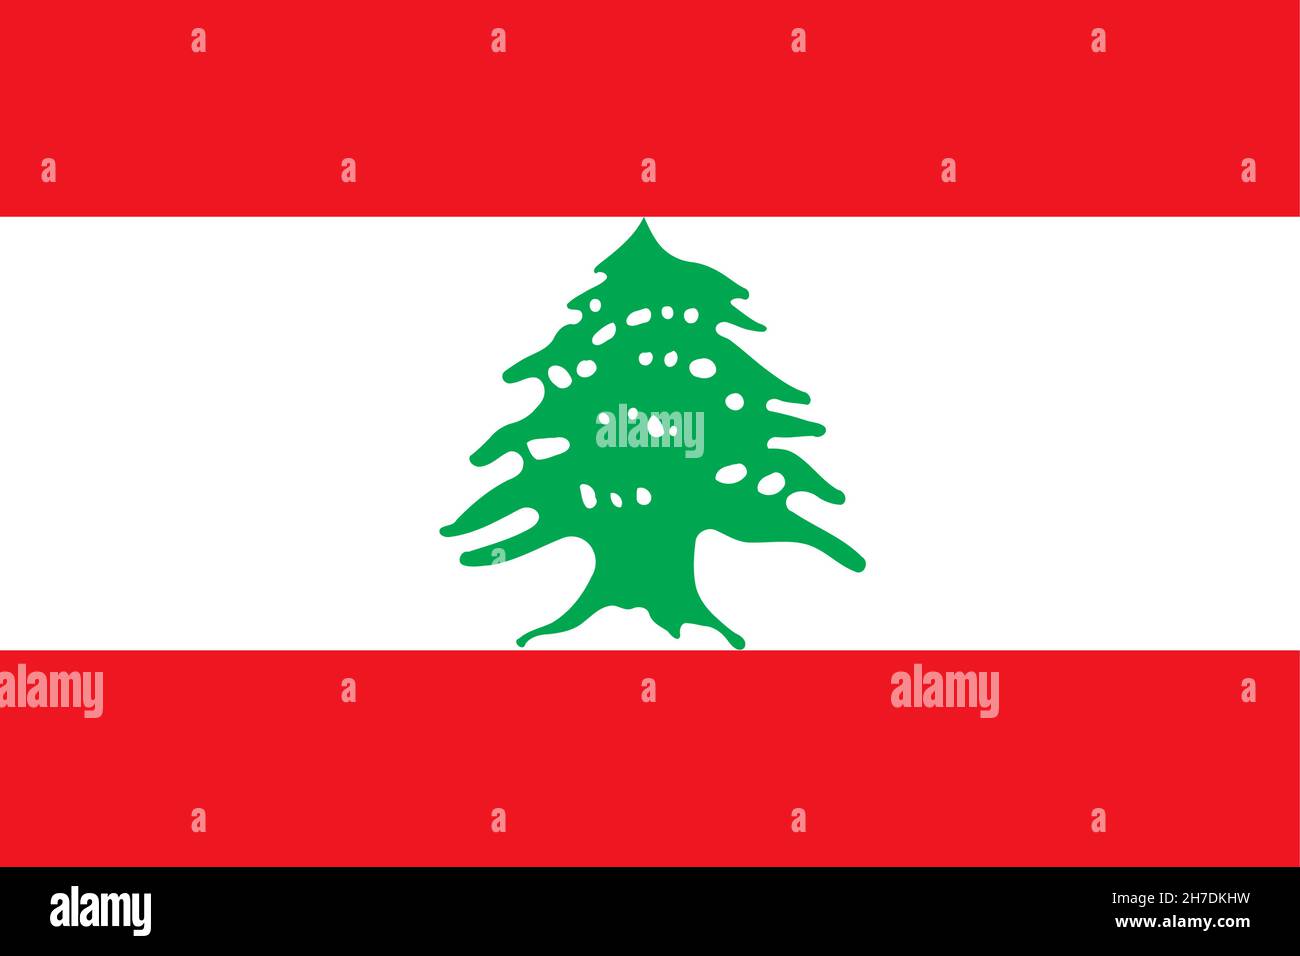 Drapeau national République libanaise, Liban, tribande horizontale de rouge, blanc et rouge, chargé d'un cèdre vert du Liban Illustration de Vecteur